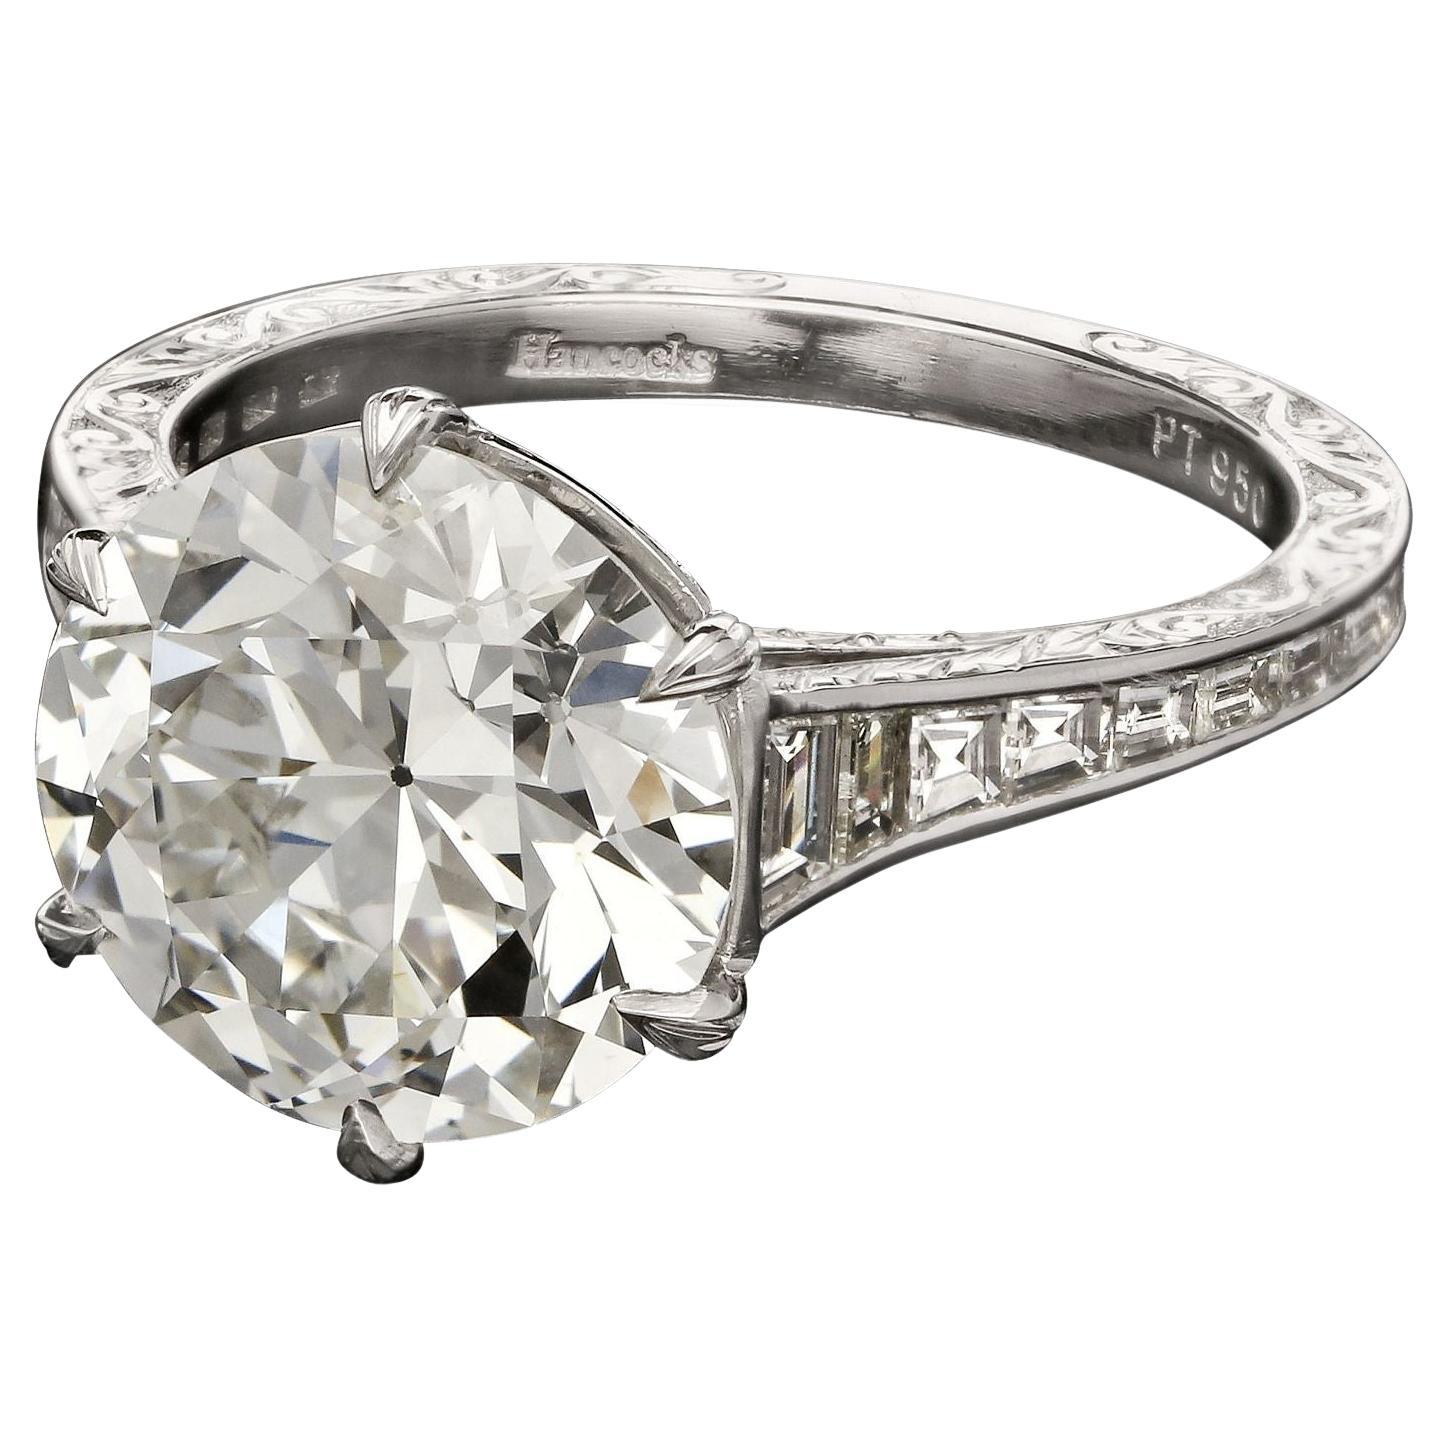 Hancocks 4.23ct Old European Brilliant Cut Diamond Ring in Platinum Contemporary